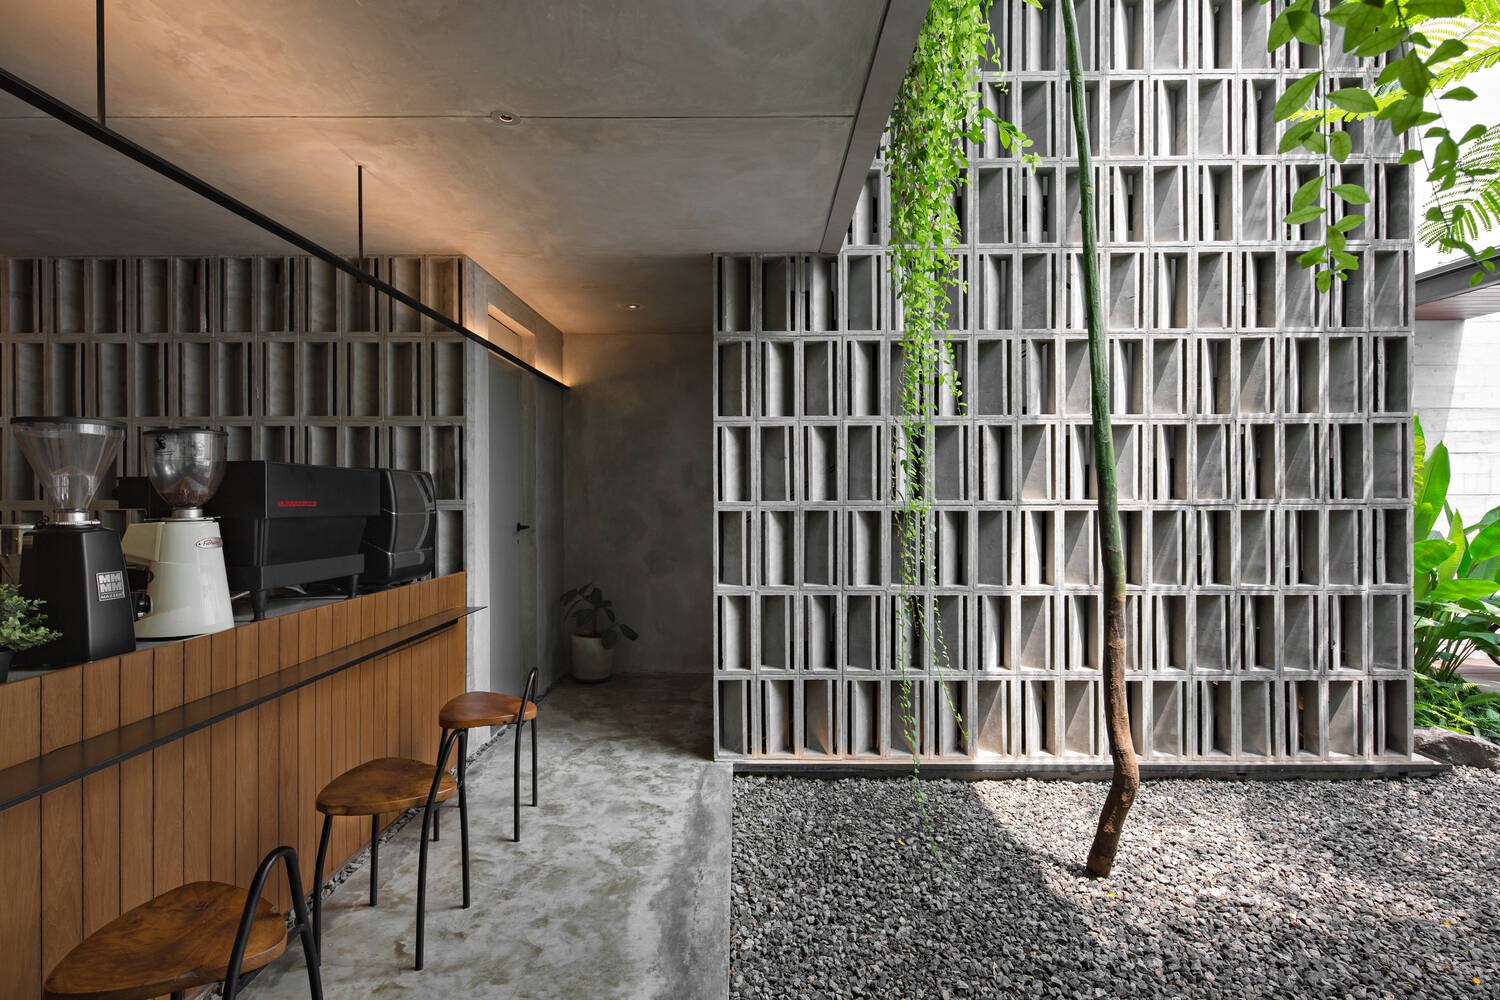 
Tường bê tông màu xám được thiết kế đặc biệt, kết hợp với chất liệu gỗ tạo nên sự tương phản về mặt thị giác với các loại cây xanh
